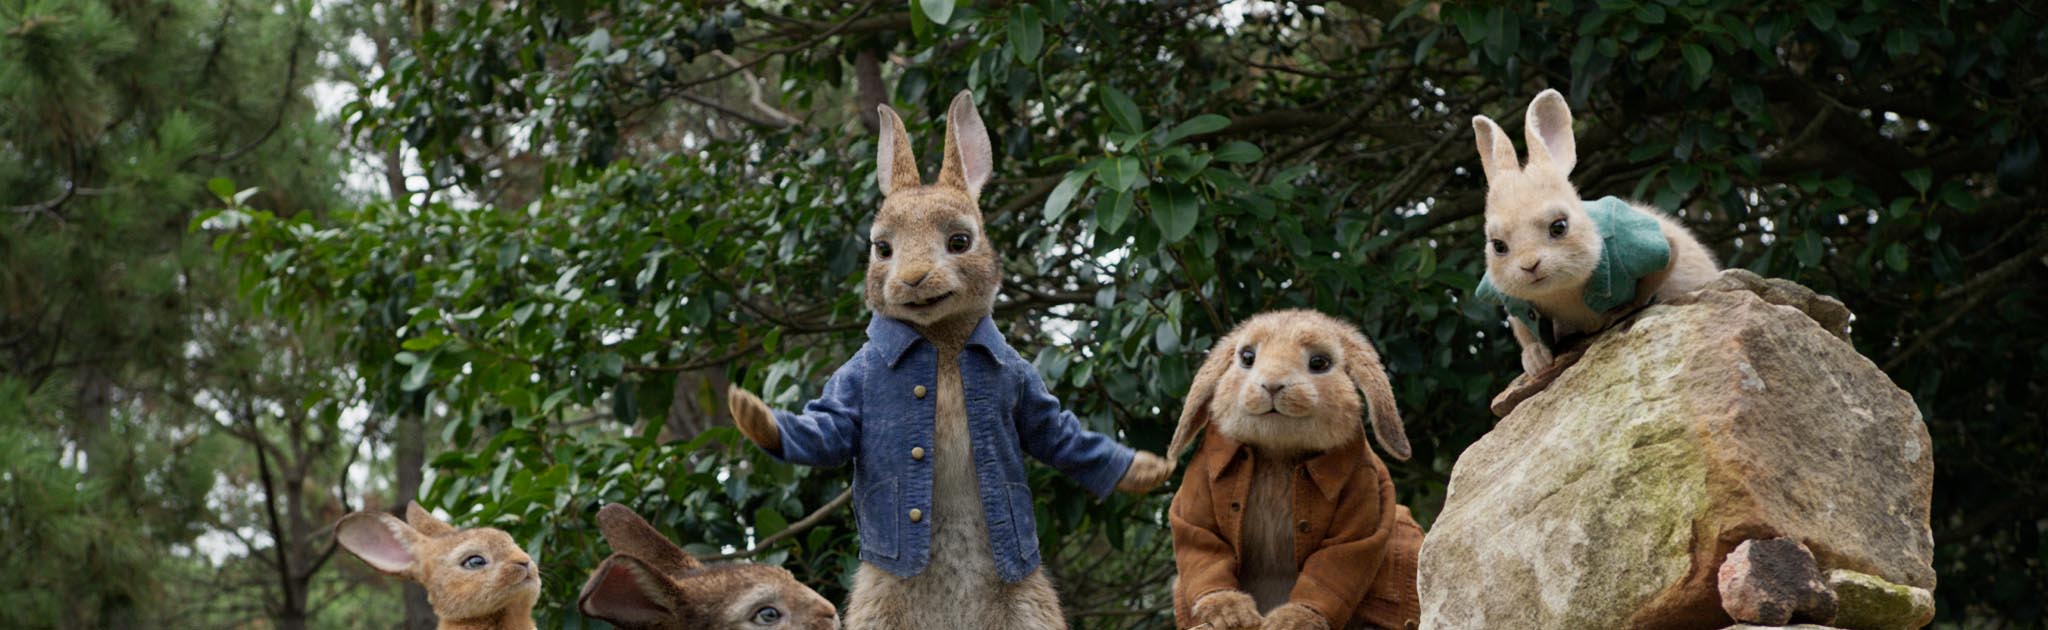 Dani Rovira, Belén Cuesta y Silvia Abril ponen sus voces en ‘Peter Rabbit’